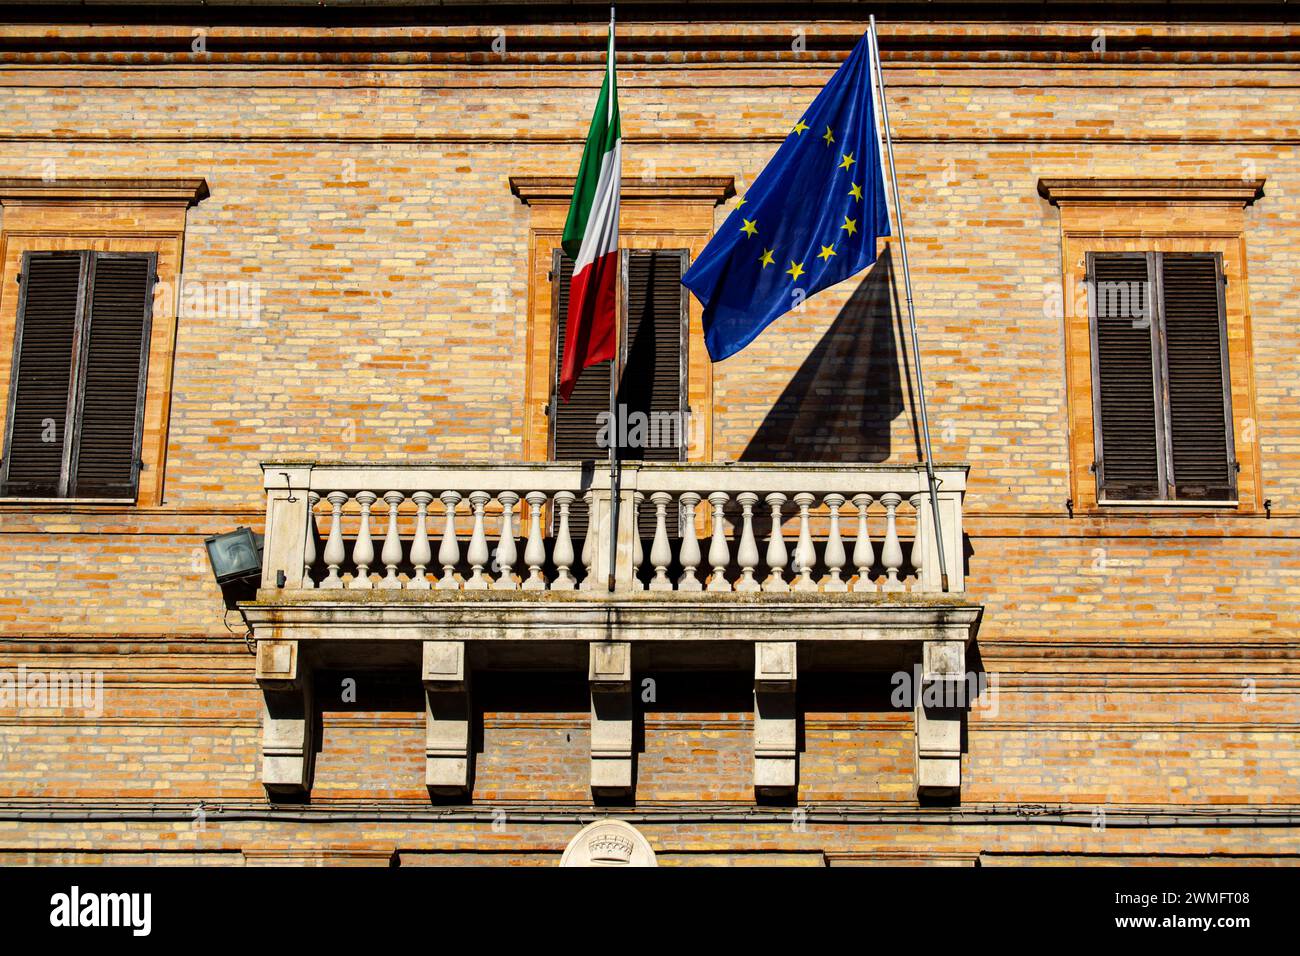 Comune di Monte Urano - Balcone con bandiera italiana e bandiera europea. Foto perfetta da utilizzare per la campagna elettorale di Monte Urano. Foto Stock